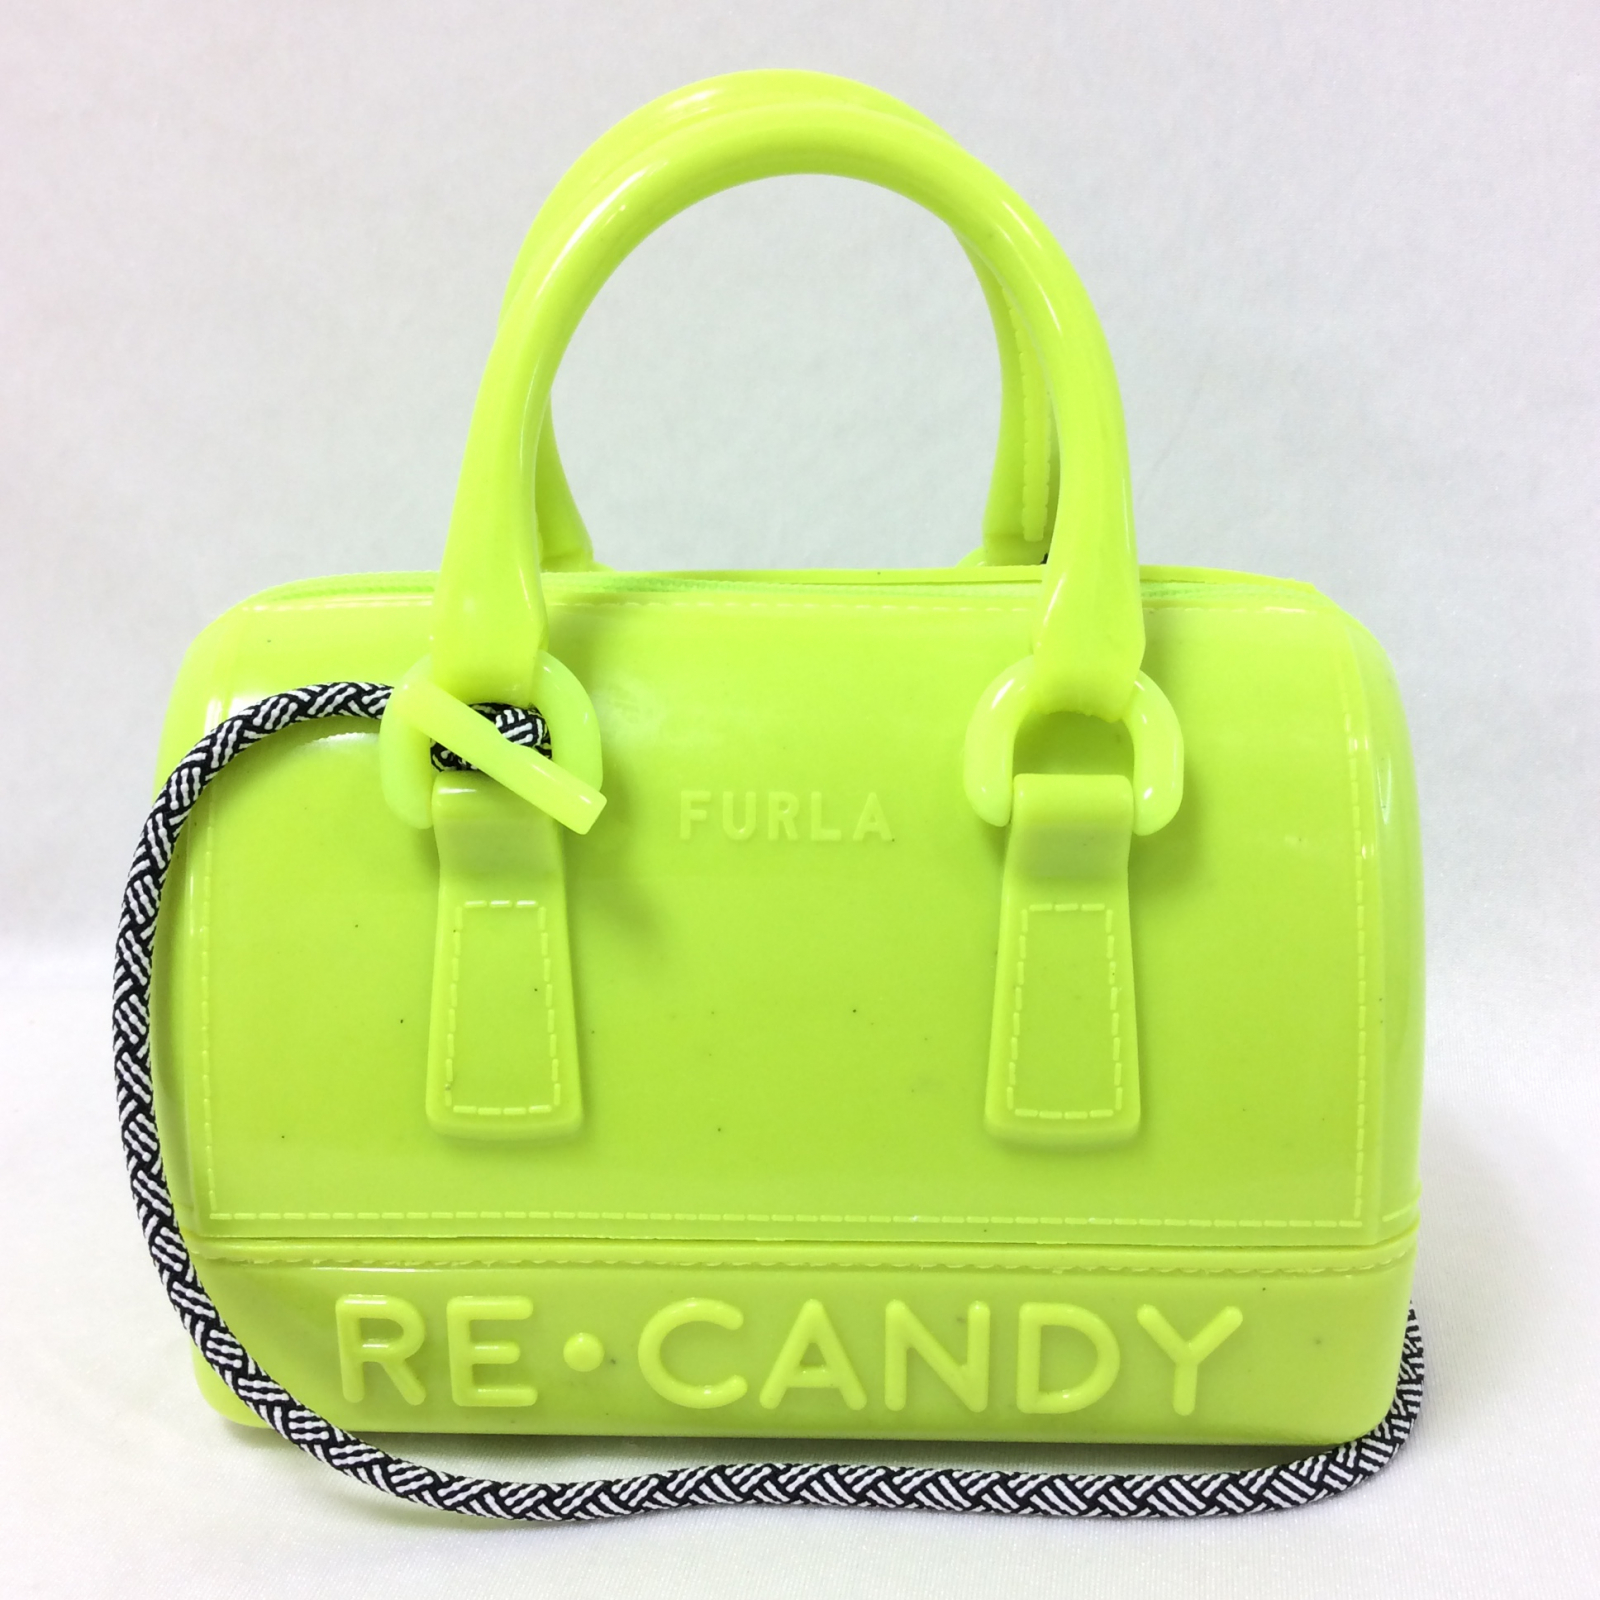 FURLA Candy bag 薄黄色